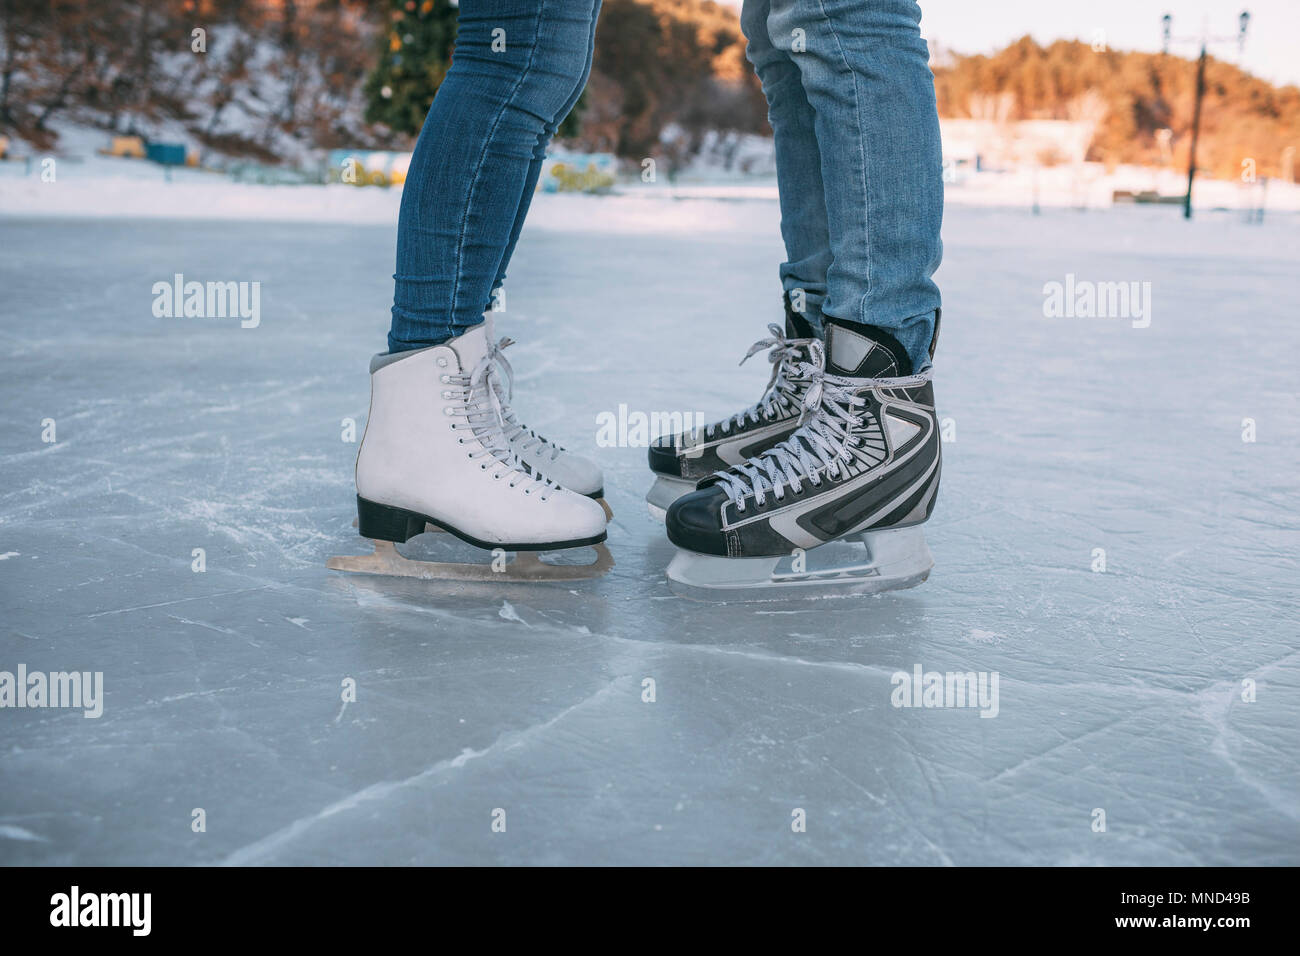 La section basse du couple portant des patins à glace sur la patinoire Banque D'Images